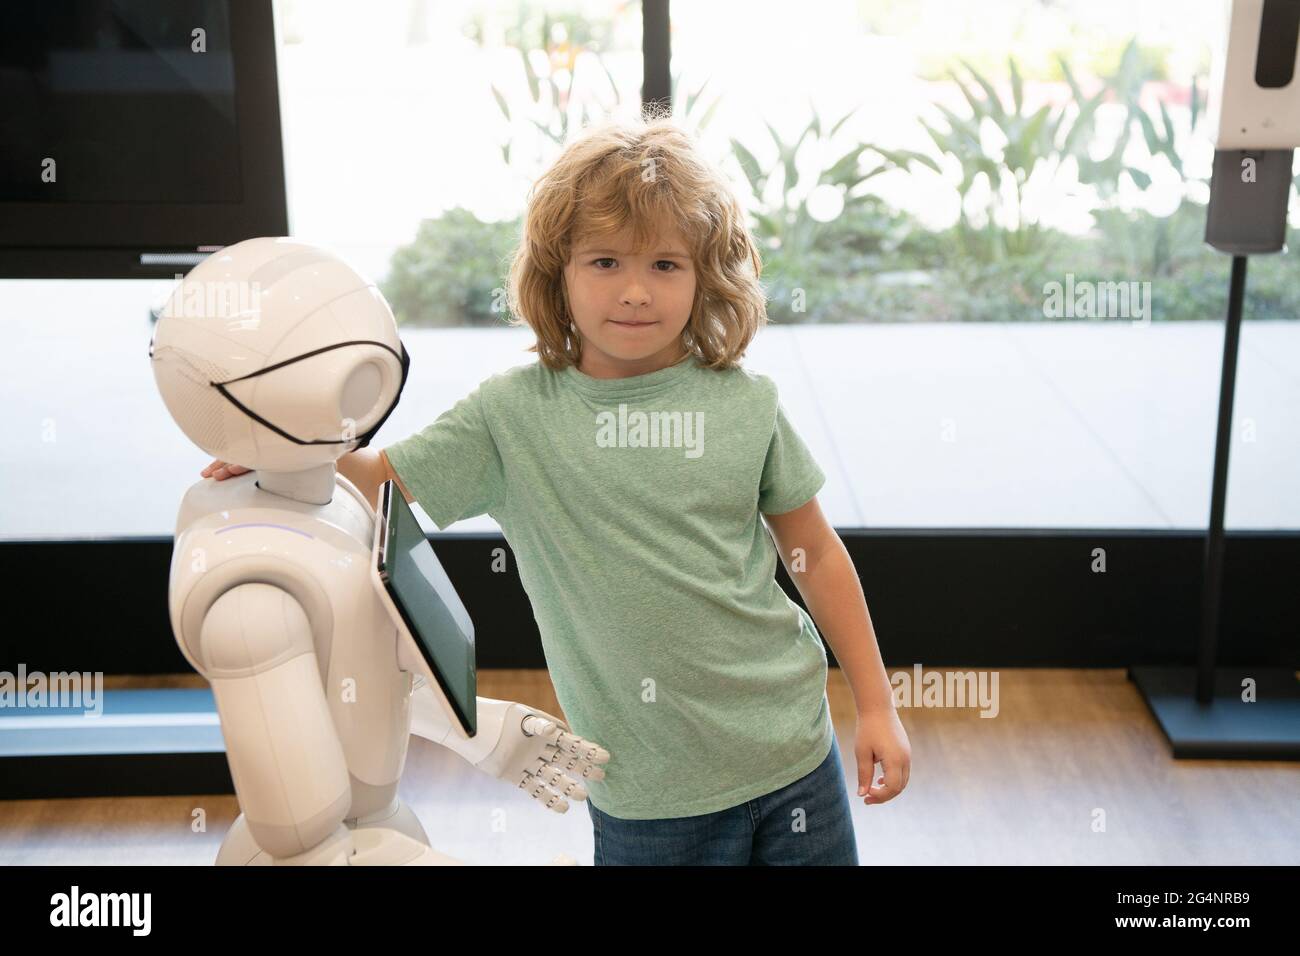 assistant d'enfant et de robot avec écran d'information dans le masque de protection. robotique pandémie future Banque D'Images